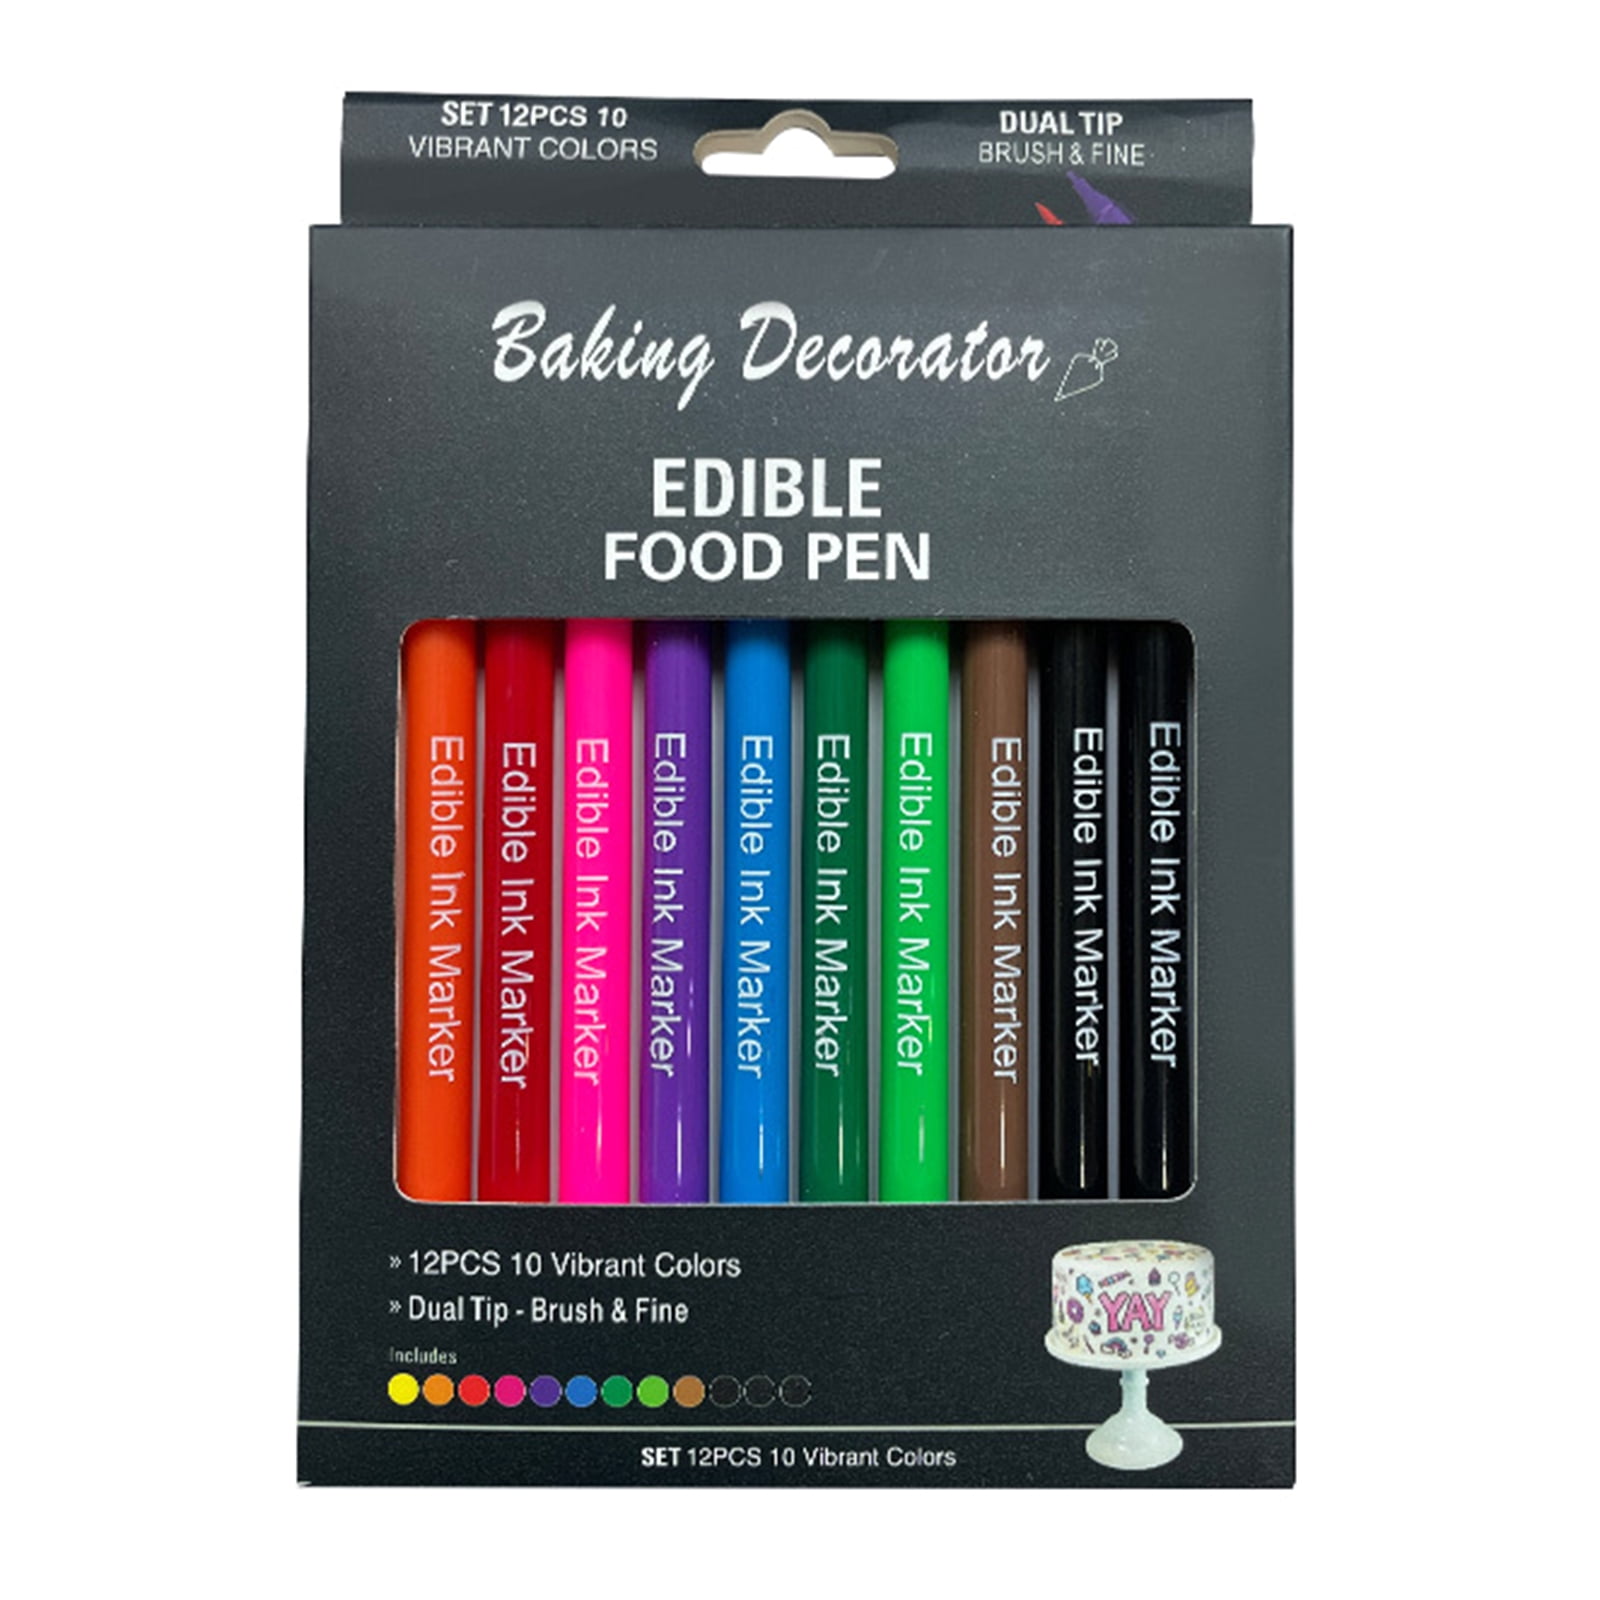 FooDoodler Orange and Brown Fine Line Marker Set (2 pens) – The Flour Box